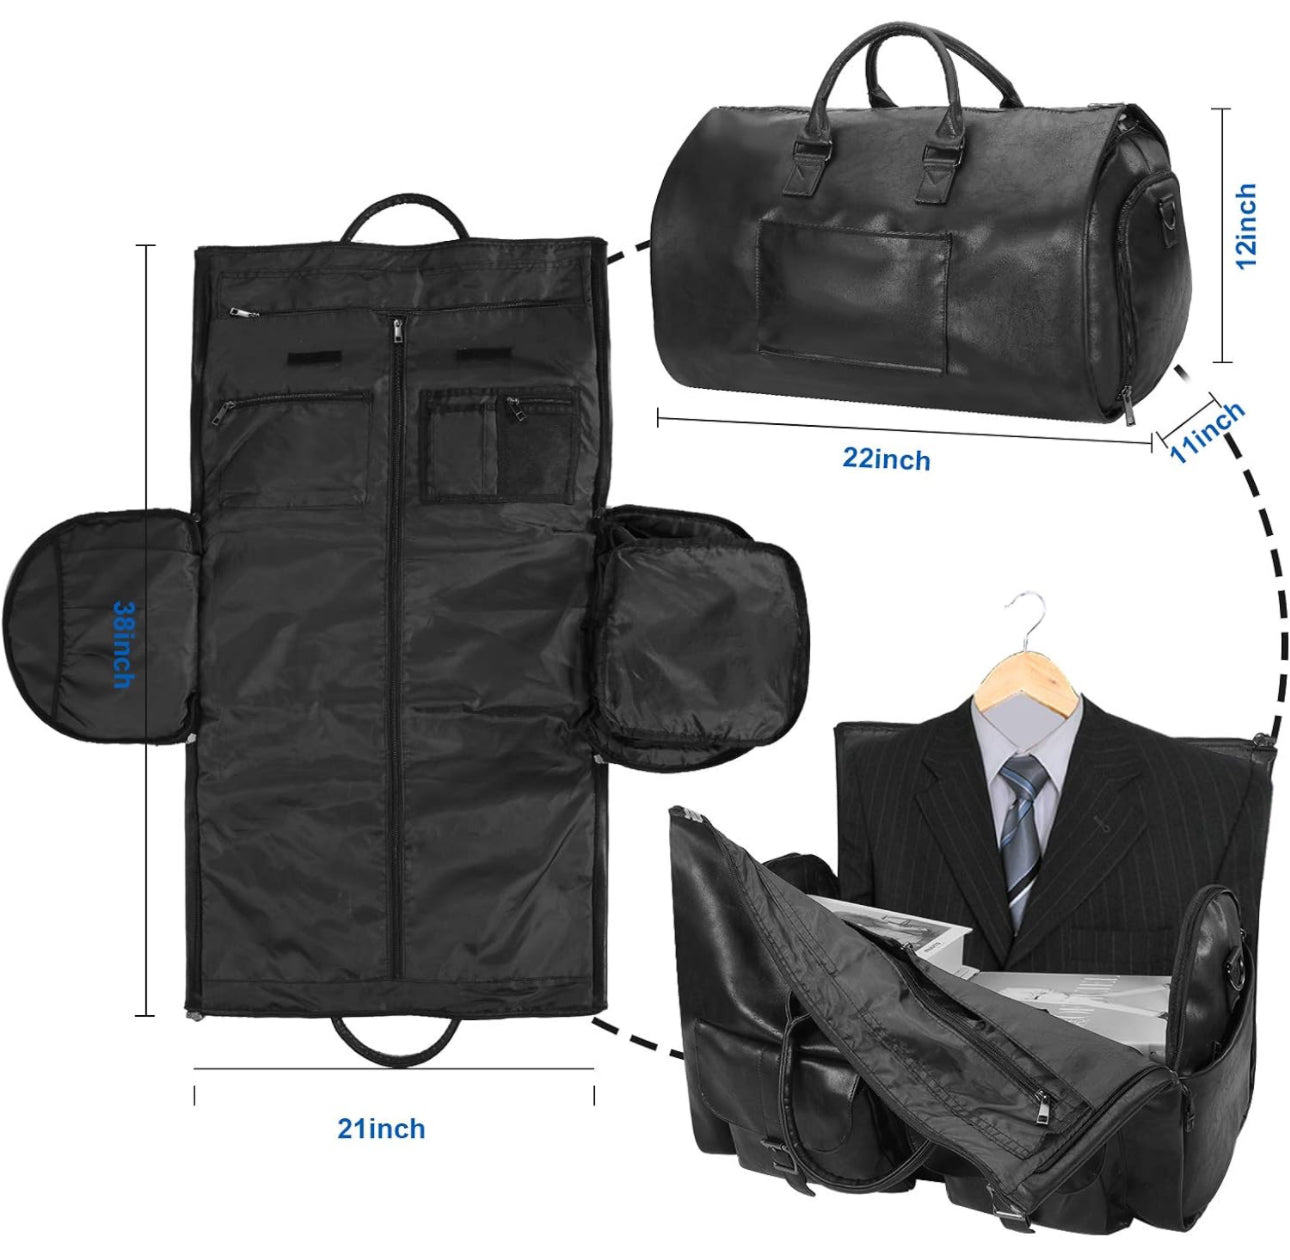 DOGDD™ - Foldable Clothing Bag